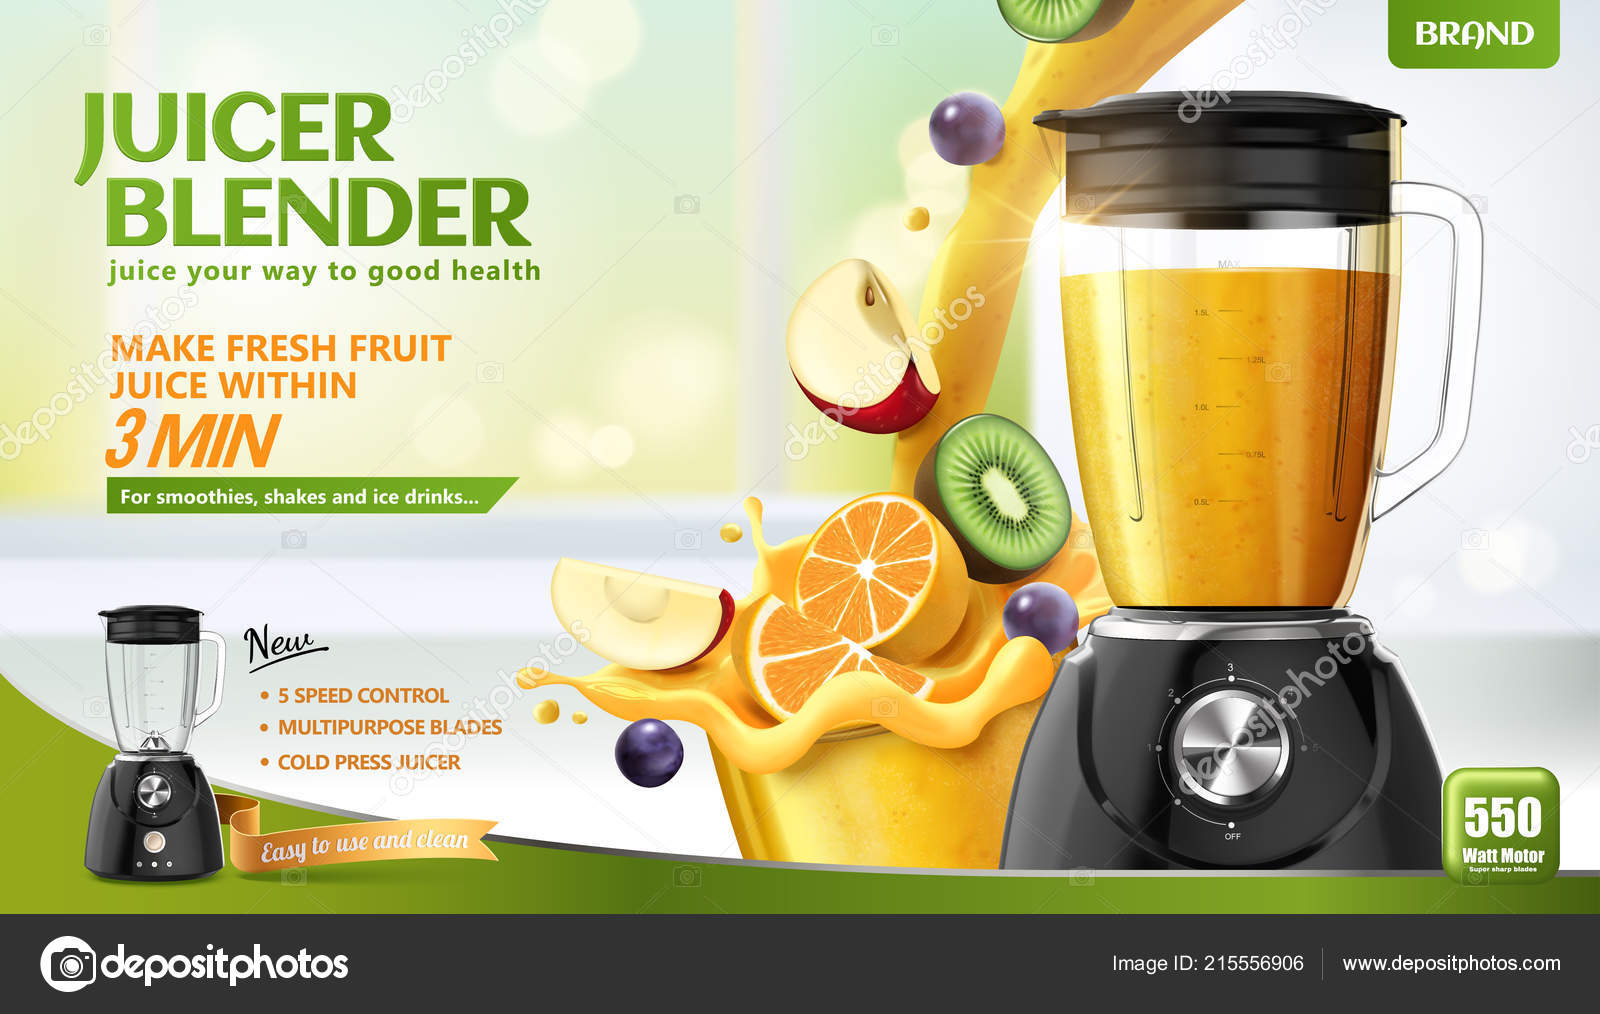 https://st4.depositphotos.com/5389310/21555/v/1600/depositphotos_215556906-stock-illustration-juicer-blender-ads-fresh-sliced.jpg